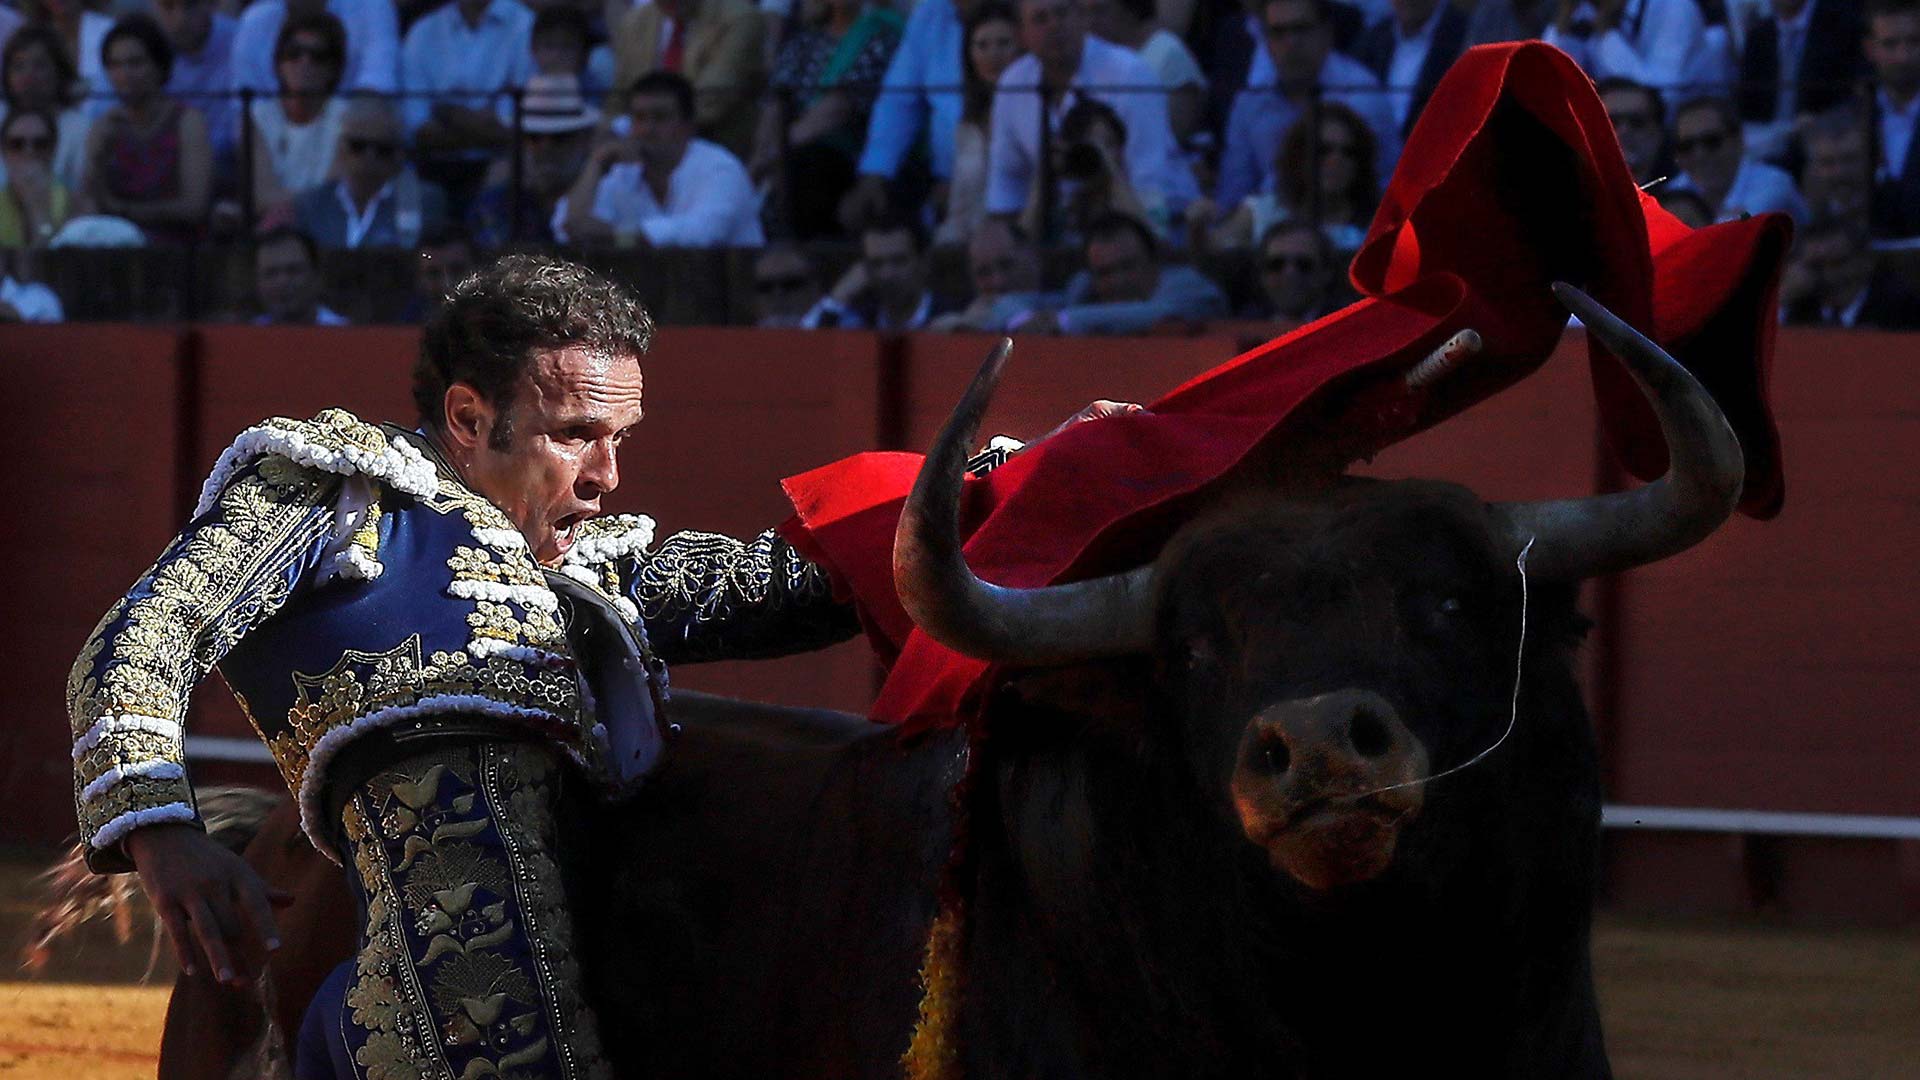 Ingresado el torero Antonio Ferrera tras precipitarse por un puente en Badajoz